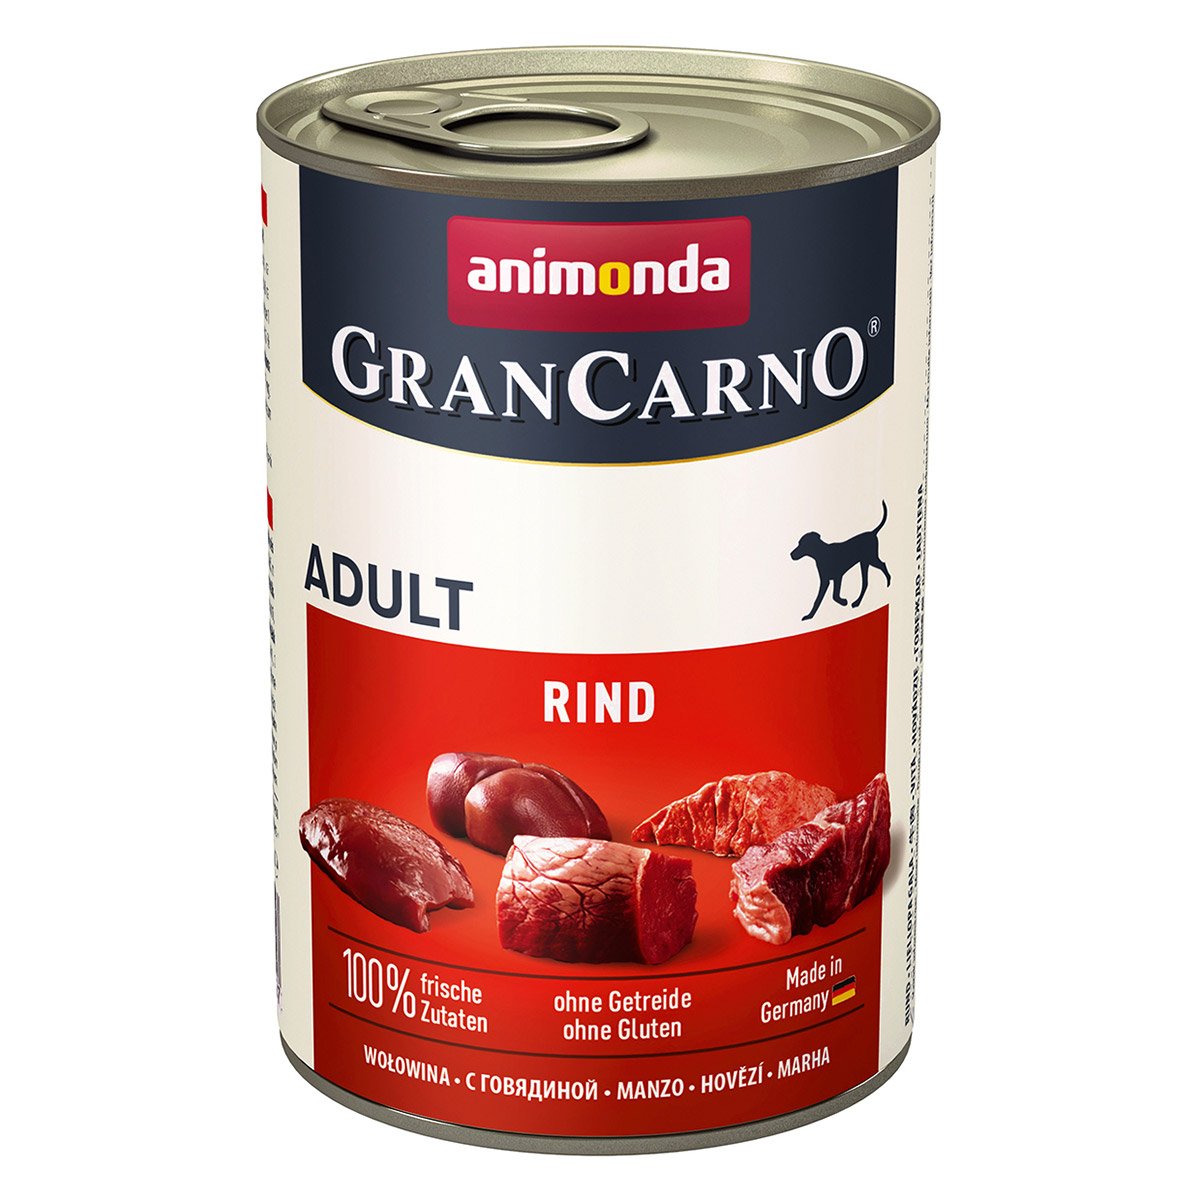 animonda GranCarno Adult Rind Pur 24x400g von animonda GranCarno